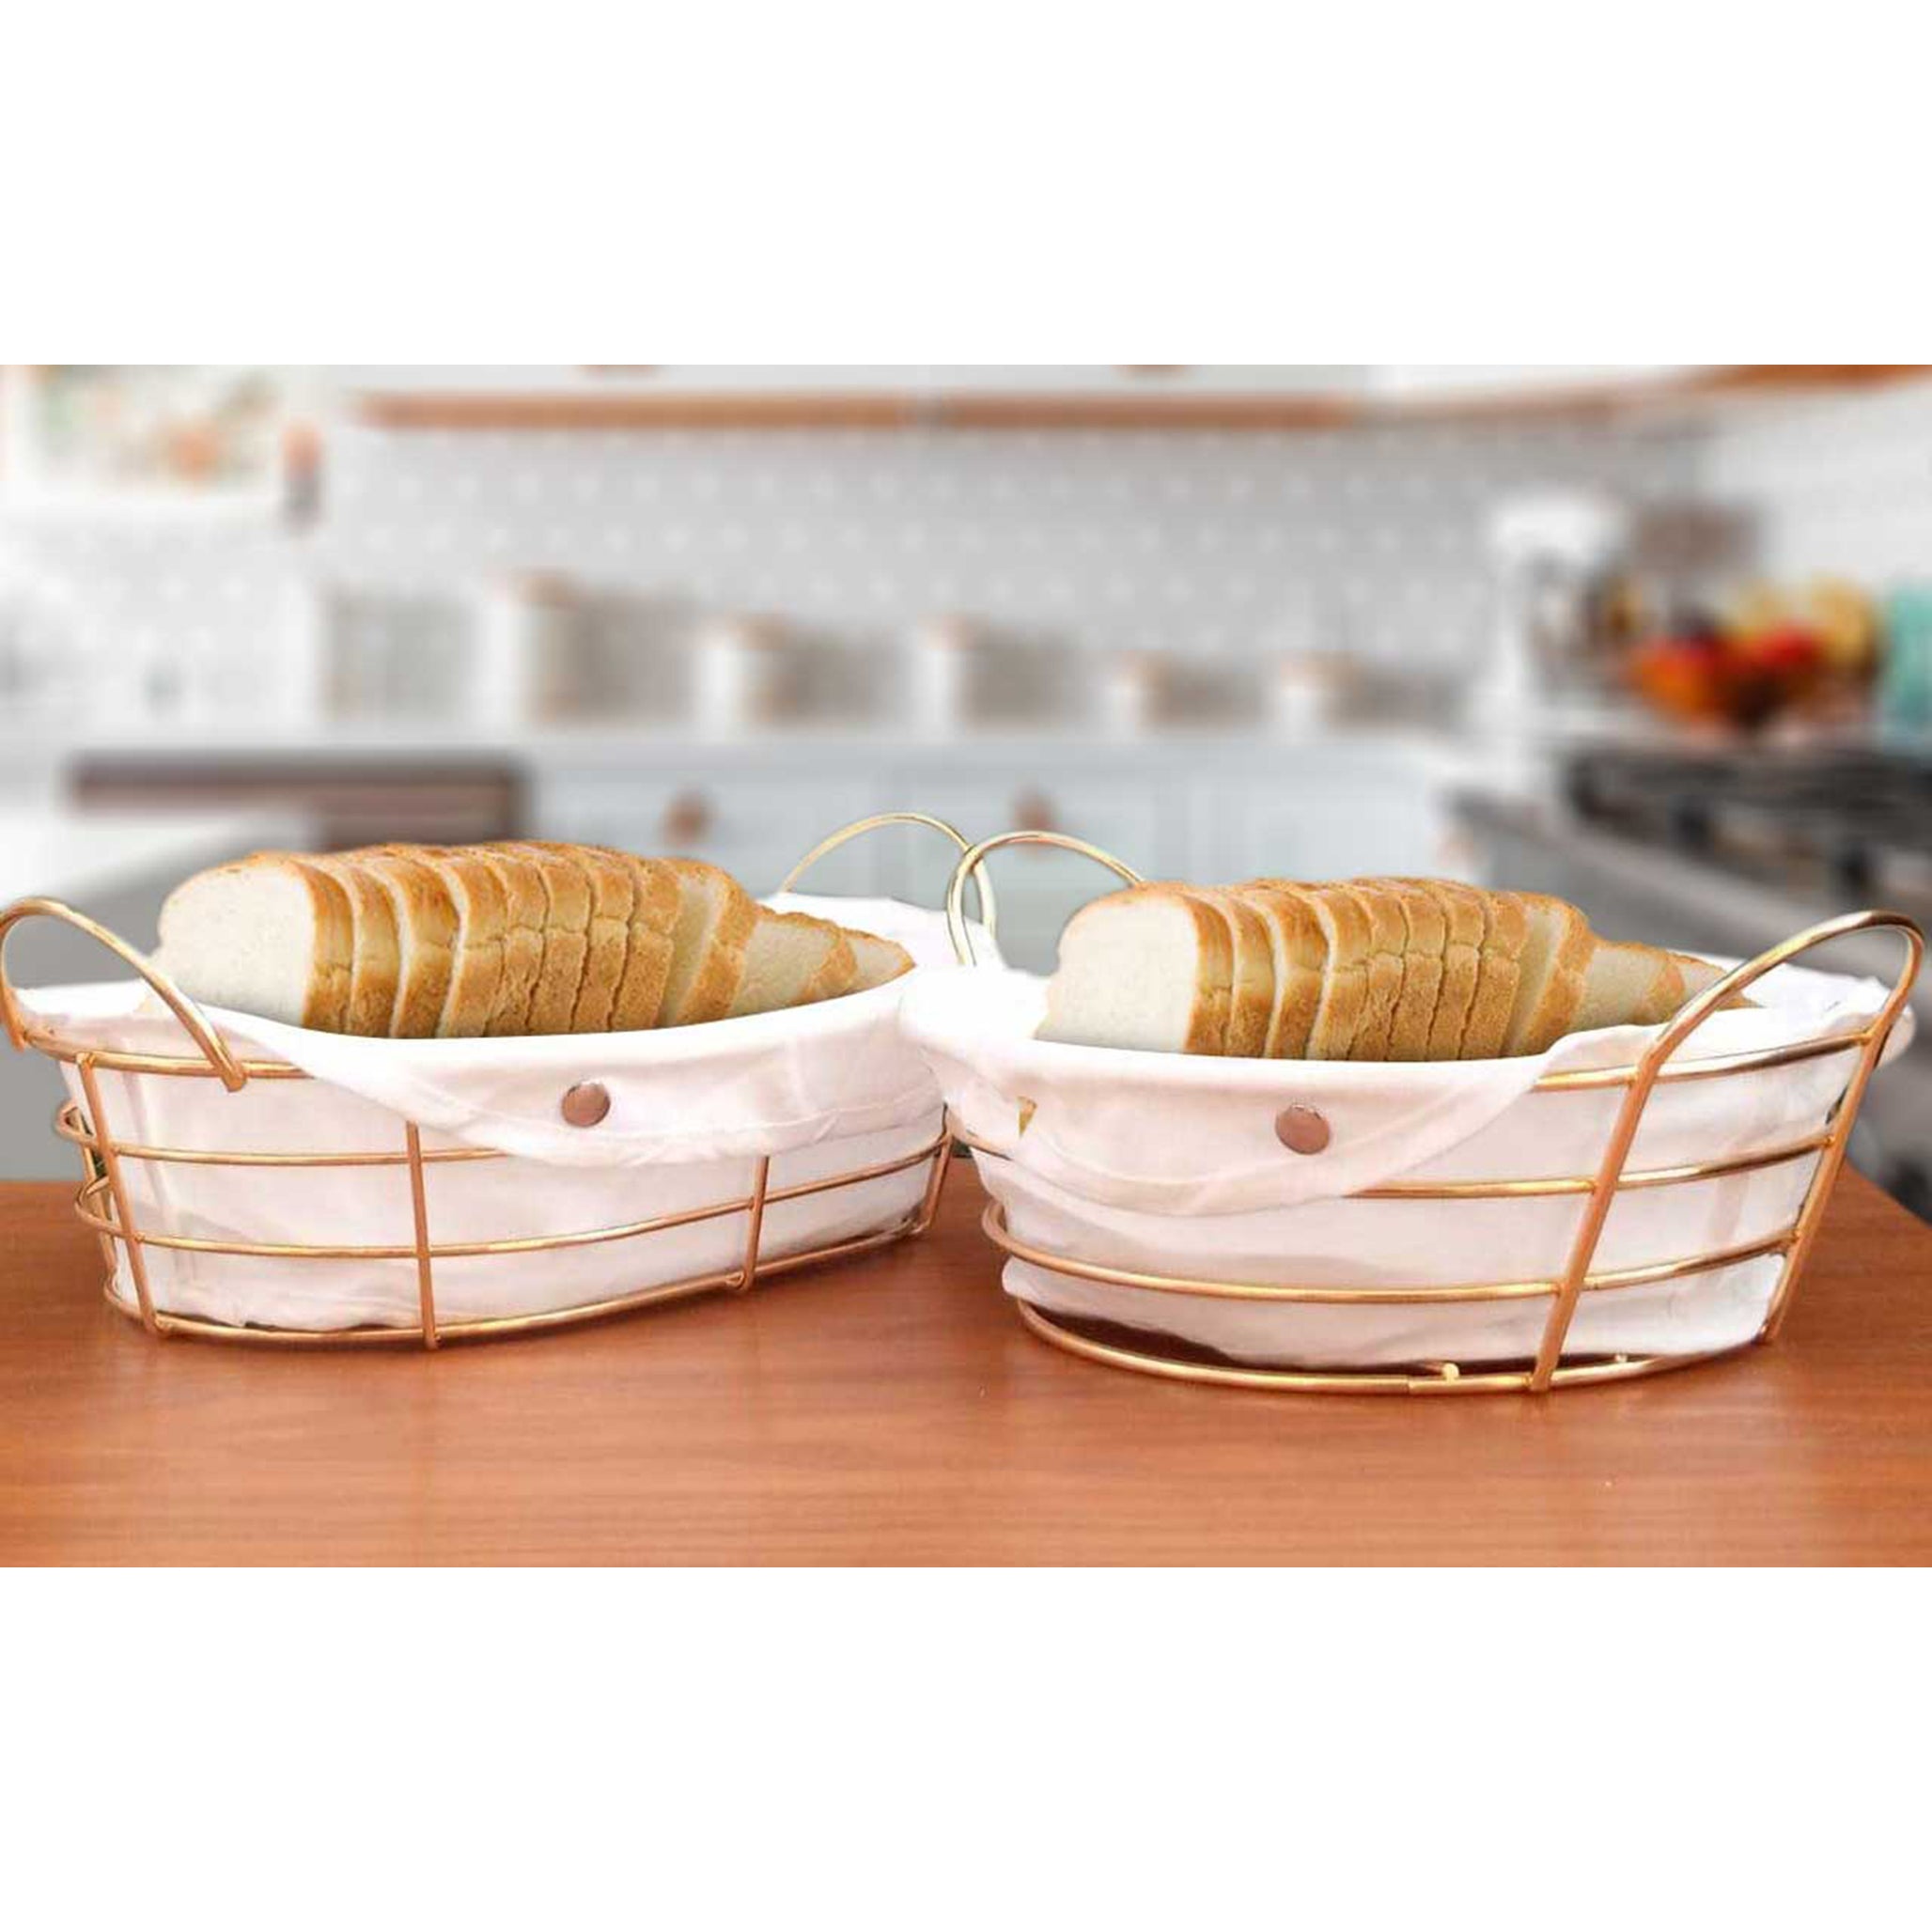 Golden Metal Bread Basket